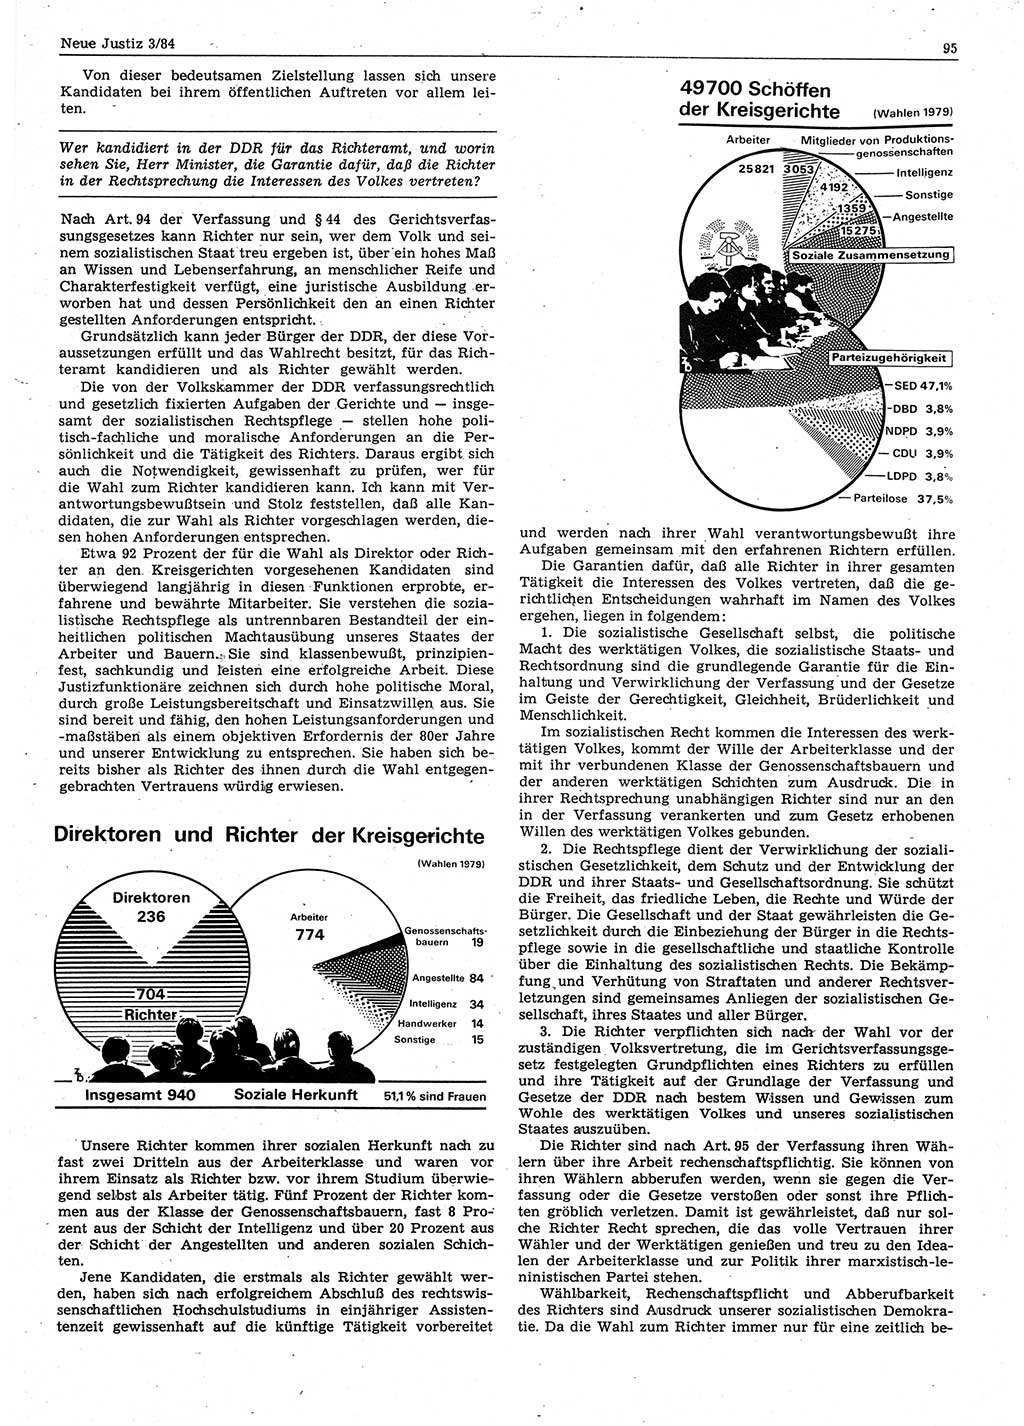 Neue Justiz (NJ), Zeitschrift für sozialistisches Recht und Gesetzlichkeit [Deutsche Demokratische Republik (DDR)], 38. Jahrgang 1984, Seite 95 (NJ DDR 1984, S. 95)